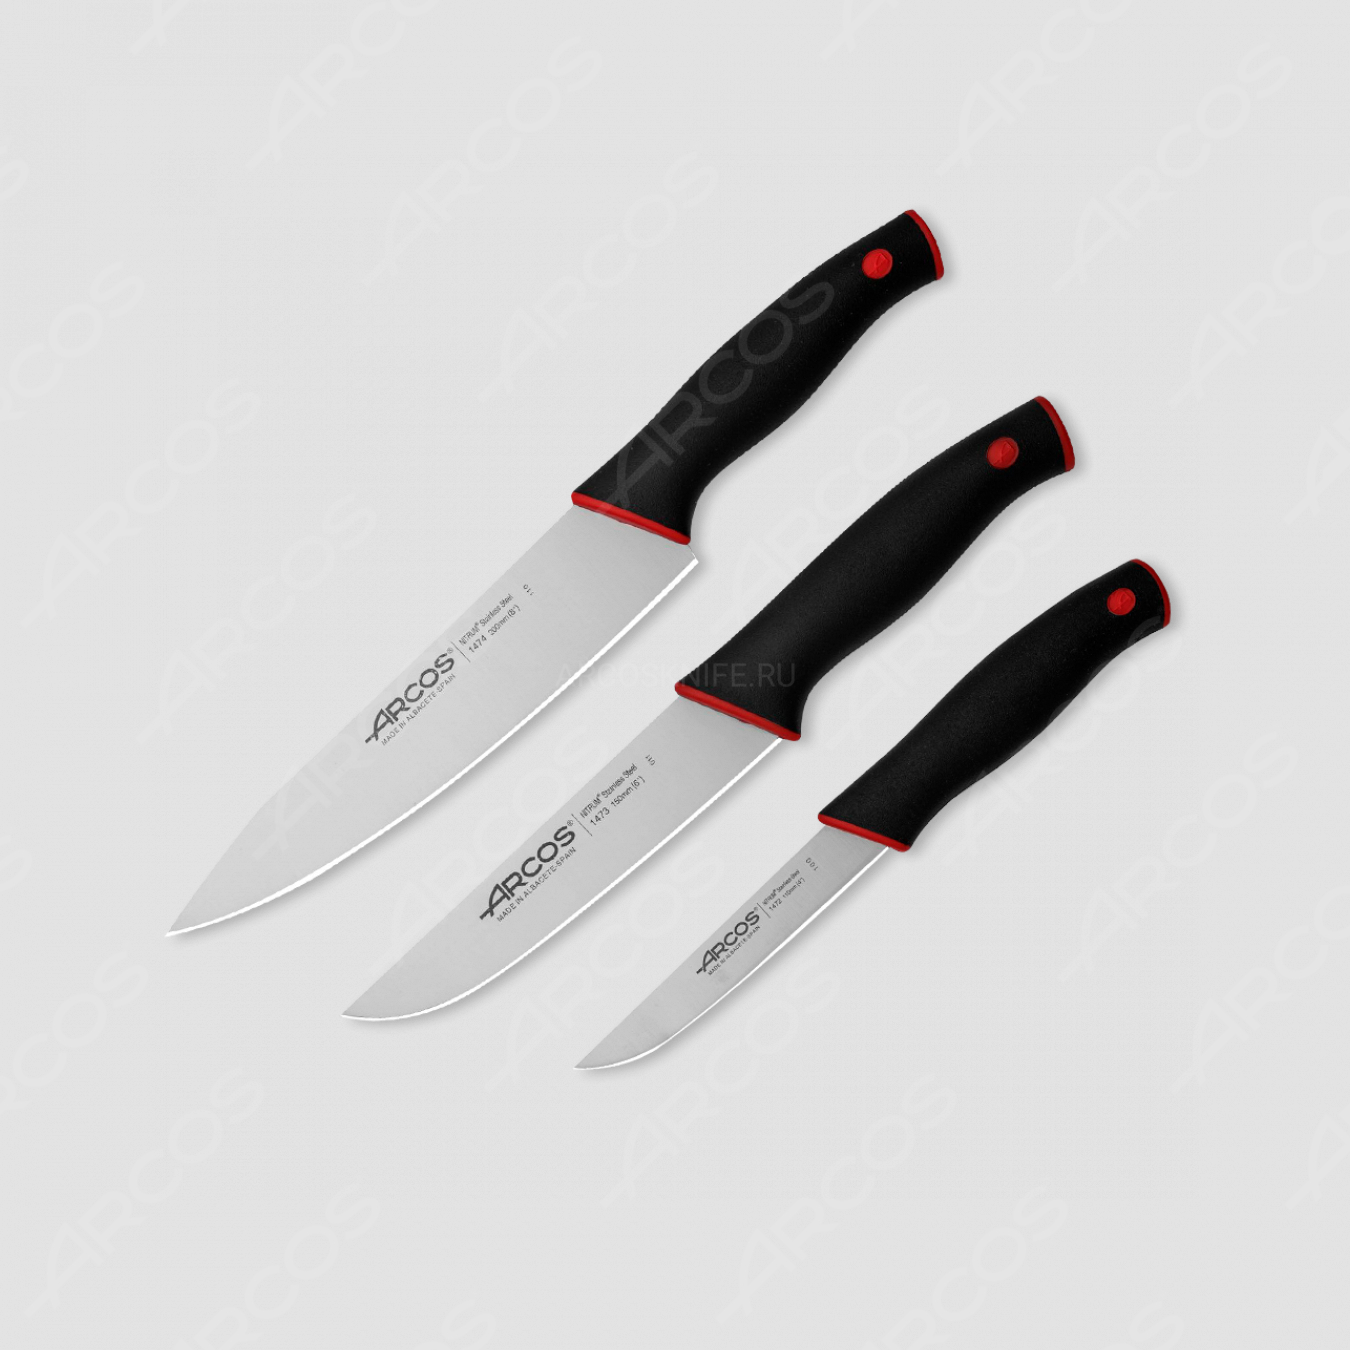 Набор кухонных ножей 3 шт., серия Duo, ARCOS, Испания